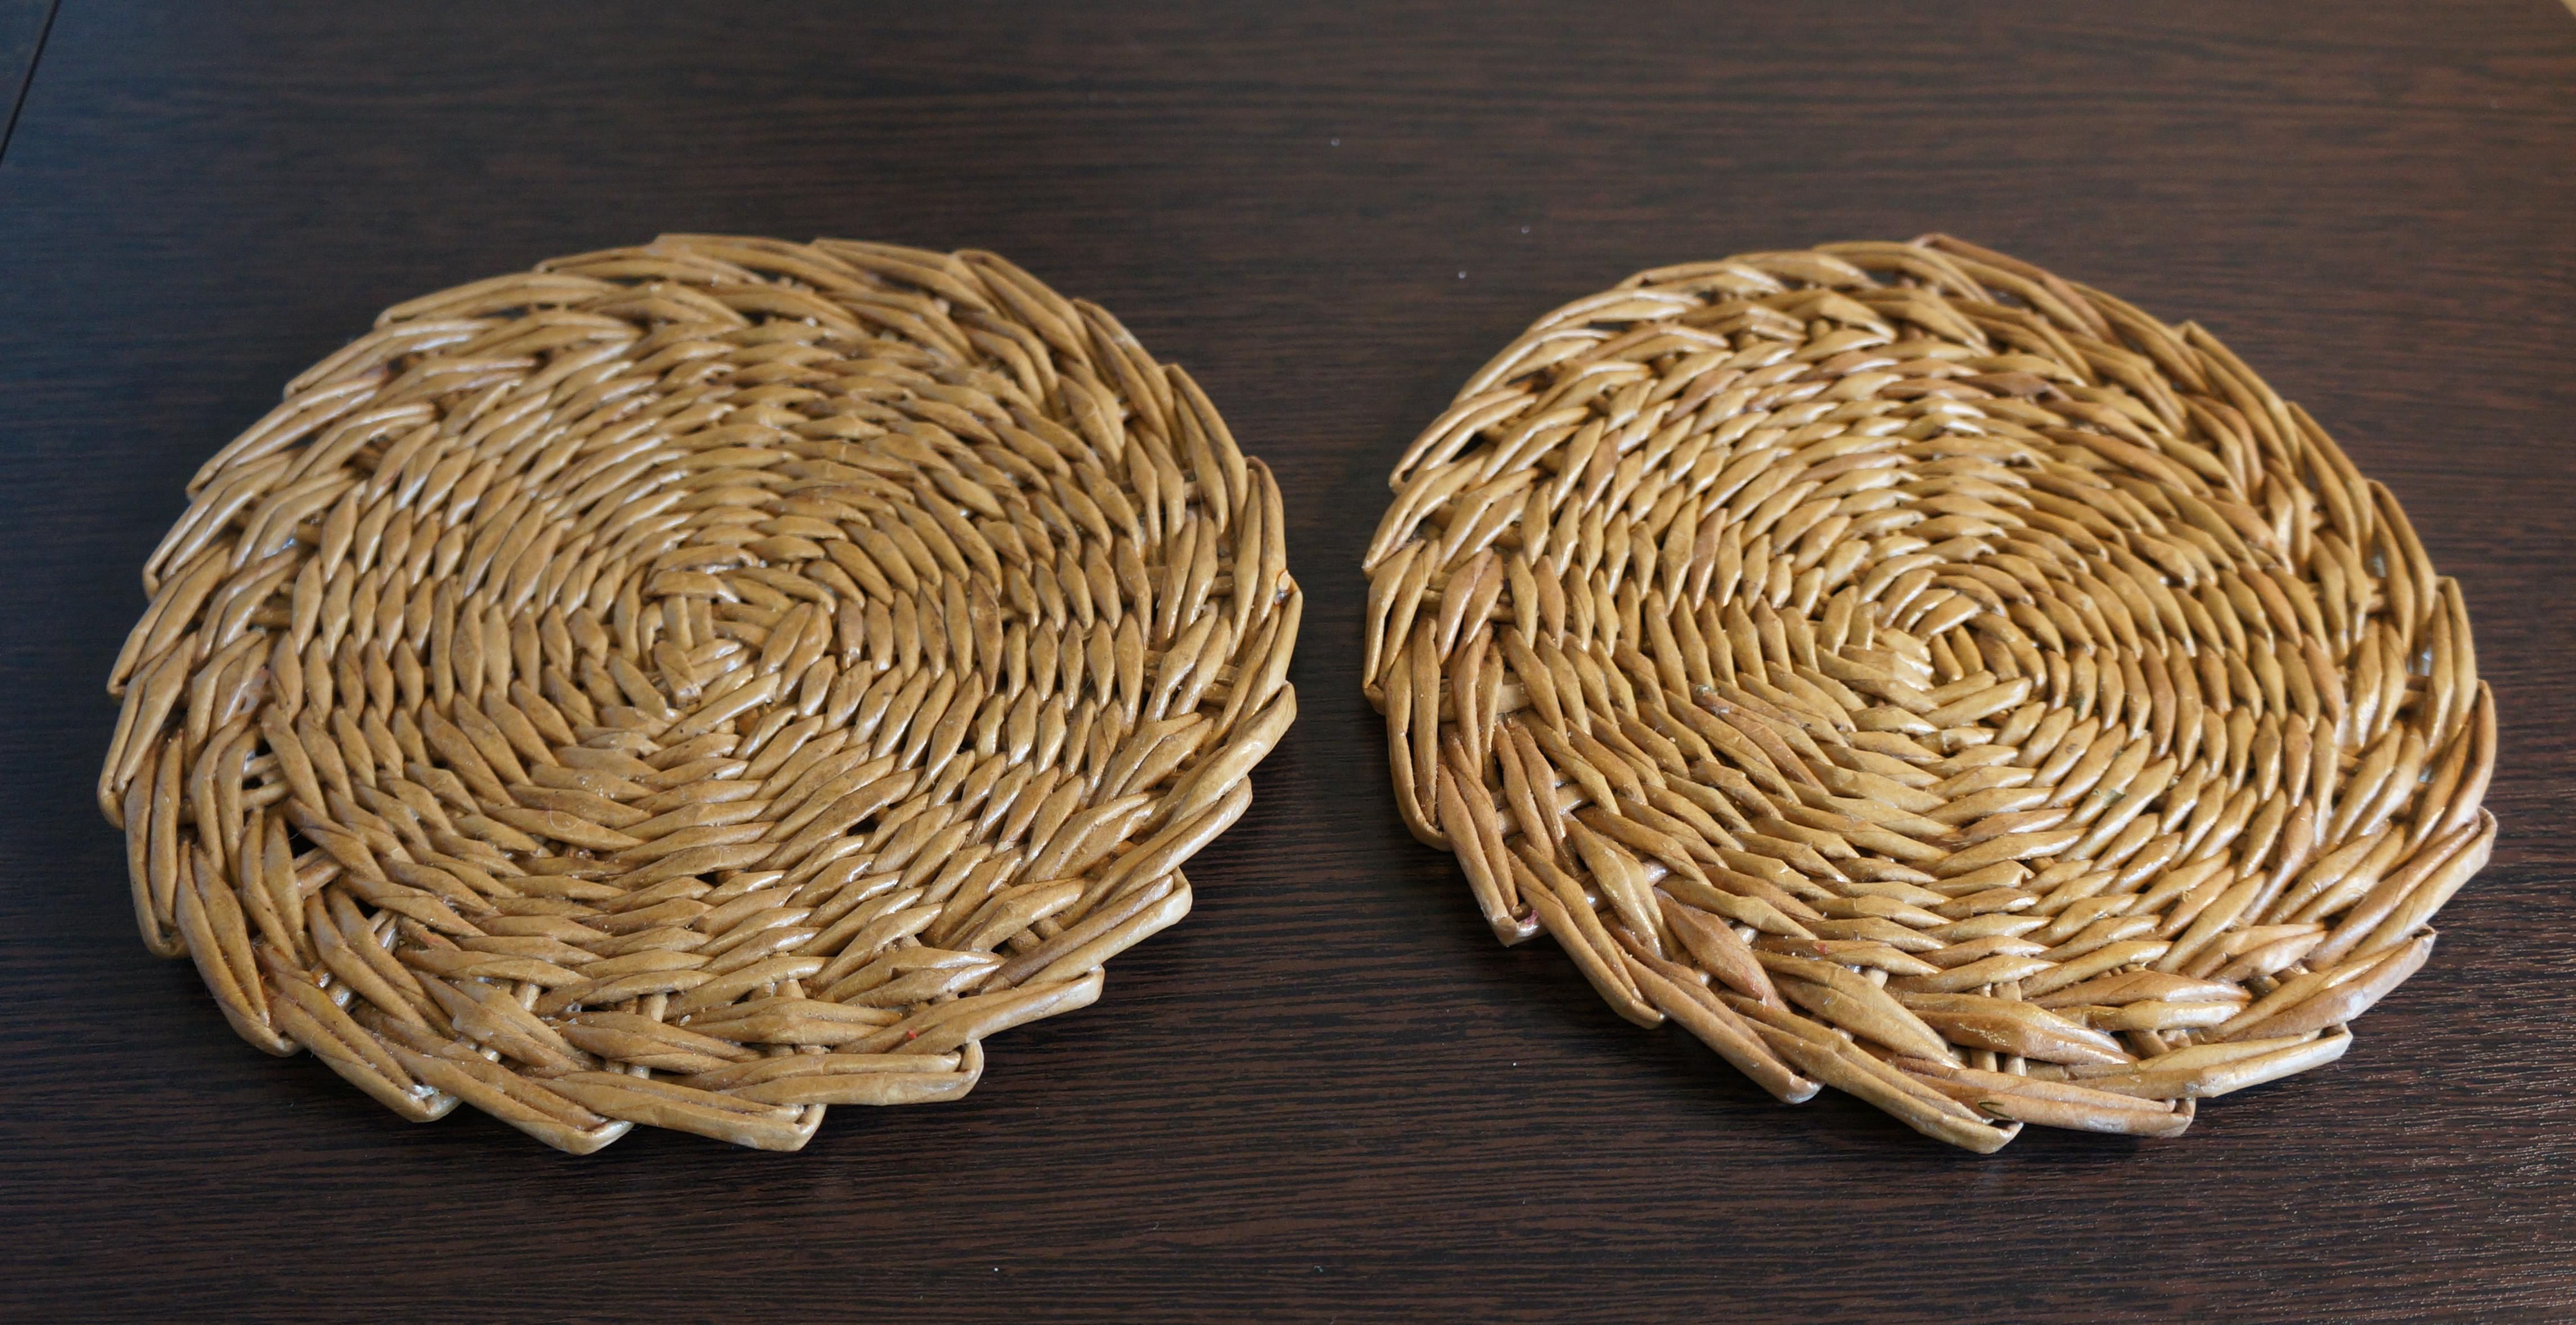 салфетка корзина плейсмат плетеная сервировка плетеный стол ланчмат